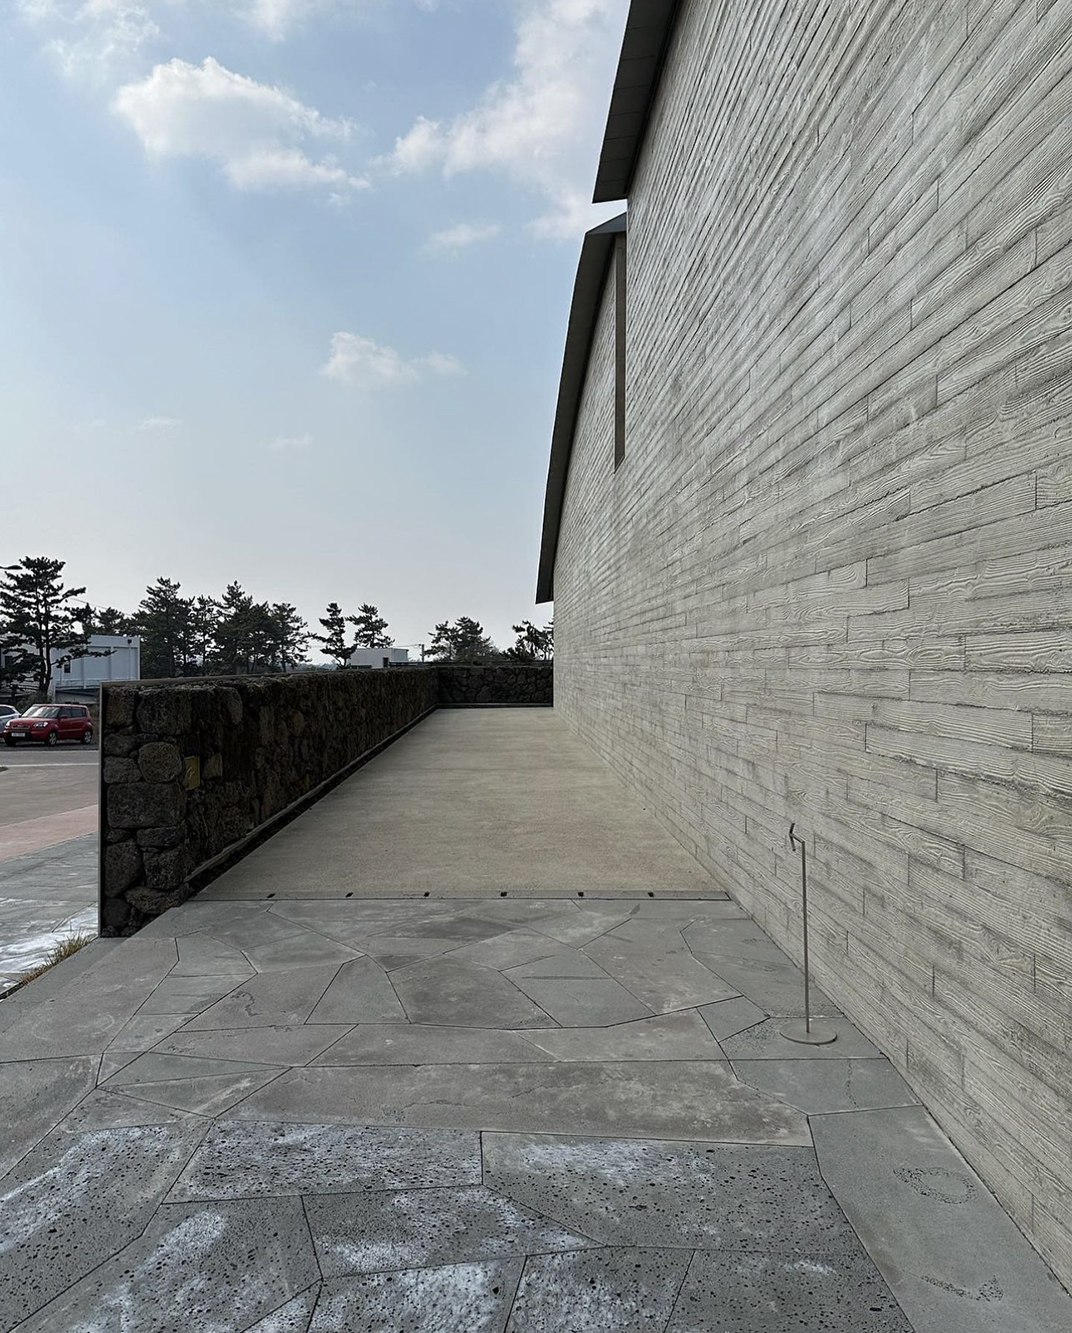 伊丹润博物馆 出生的韩国的日本建筑师 深圳 珠海 北京 广州 武汉 咖啡店 餐饮商业 logo设计 vi设计 空间设计